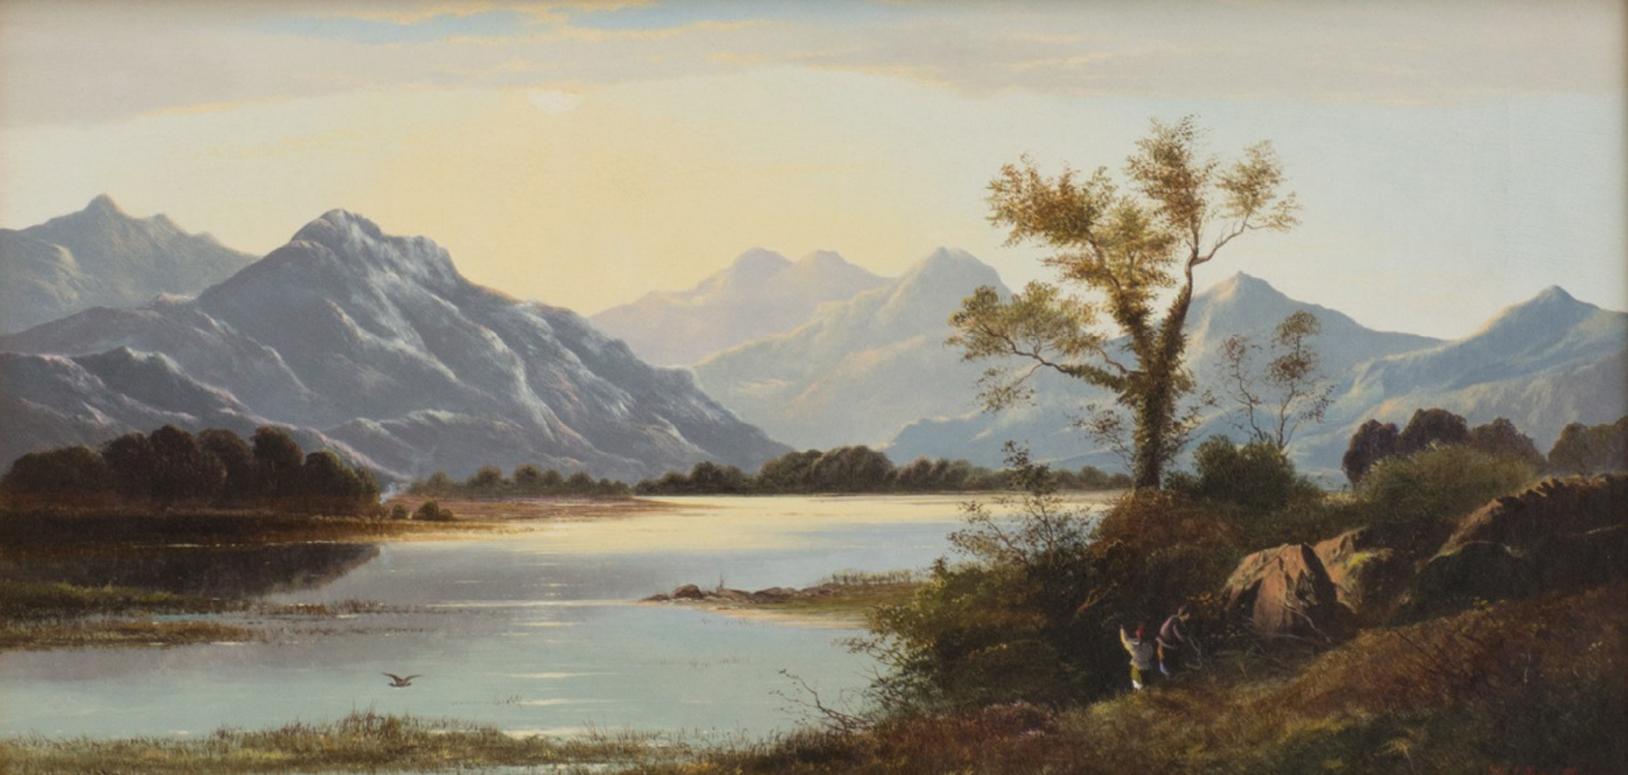 Longhrea Tam, Westmoreland - Painting by Charles Leslie